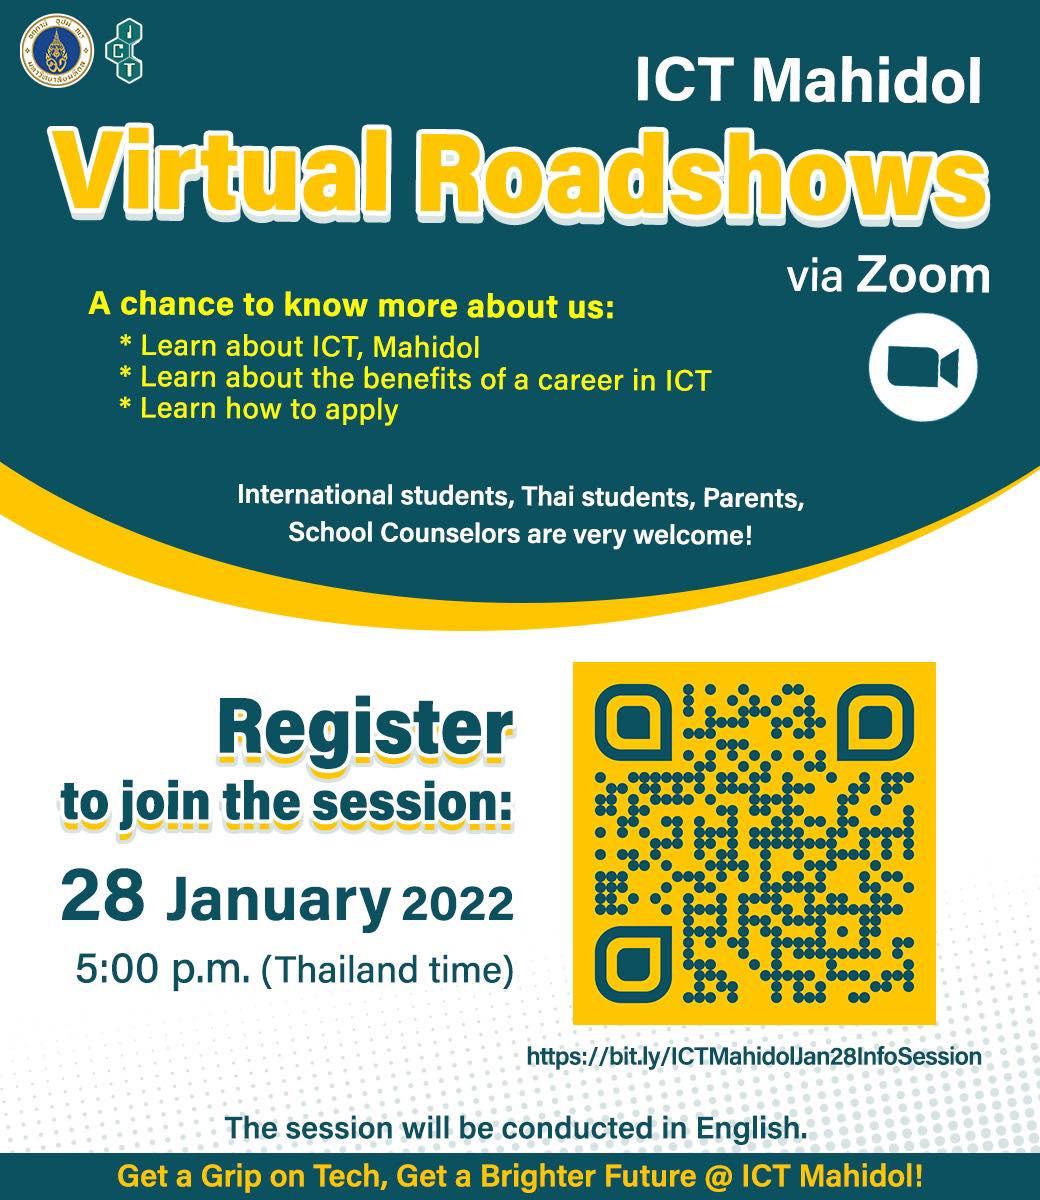 ICT Mahidol Virtual Roadshows via Zoom